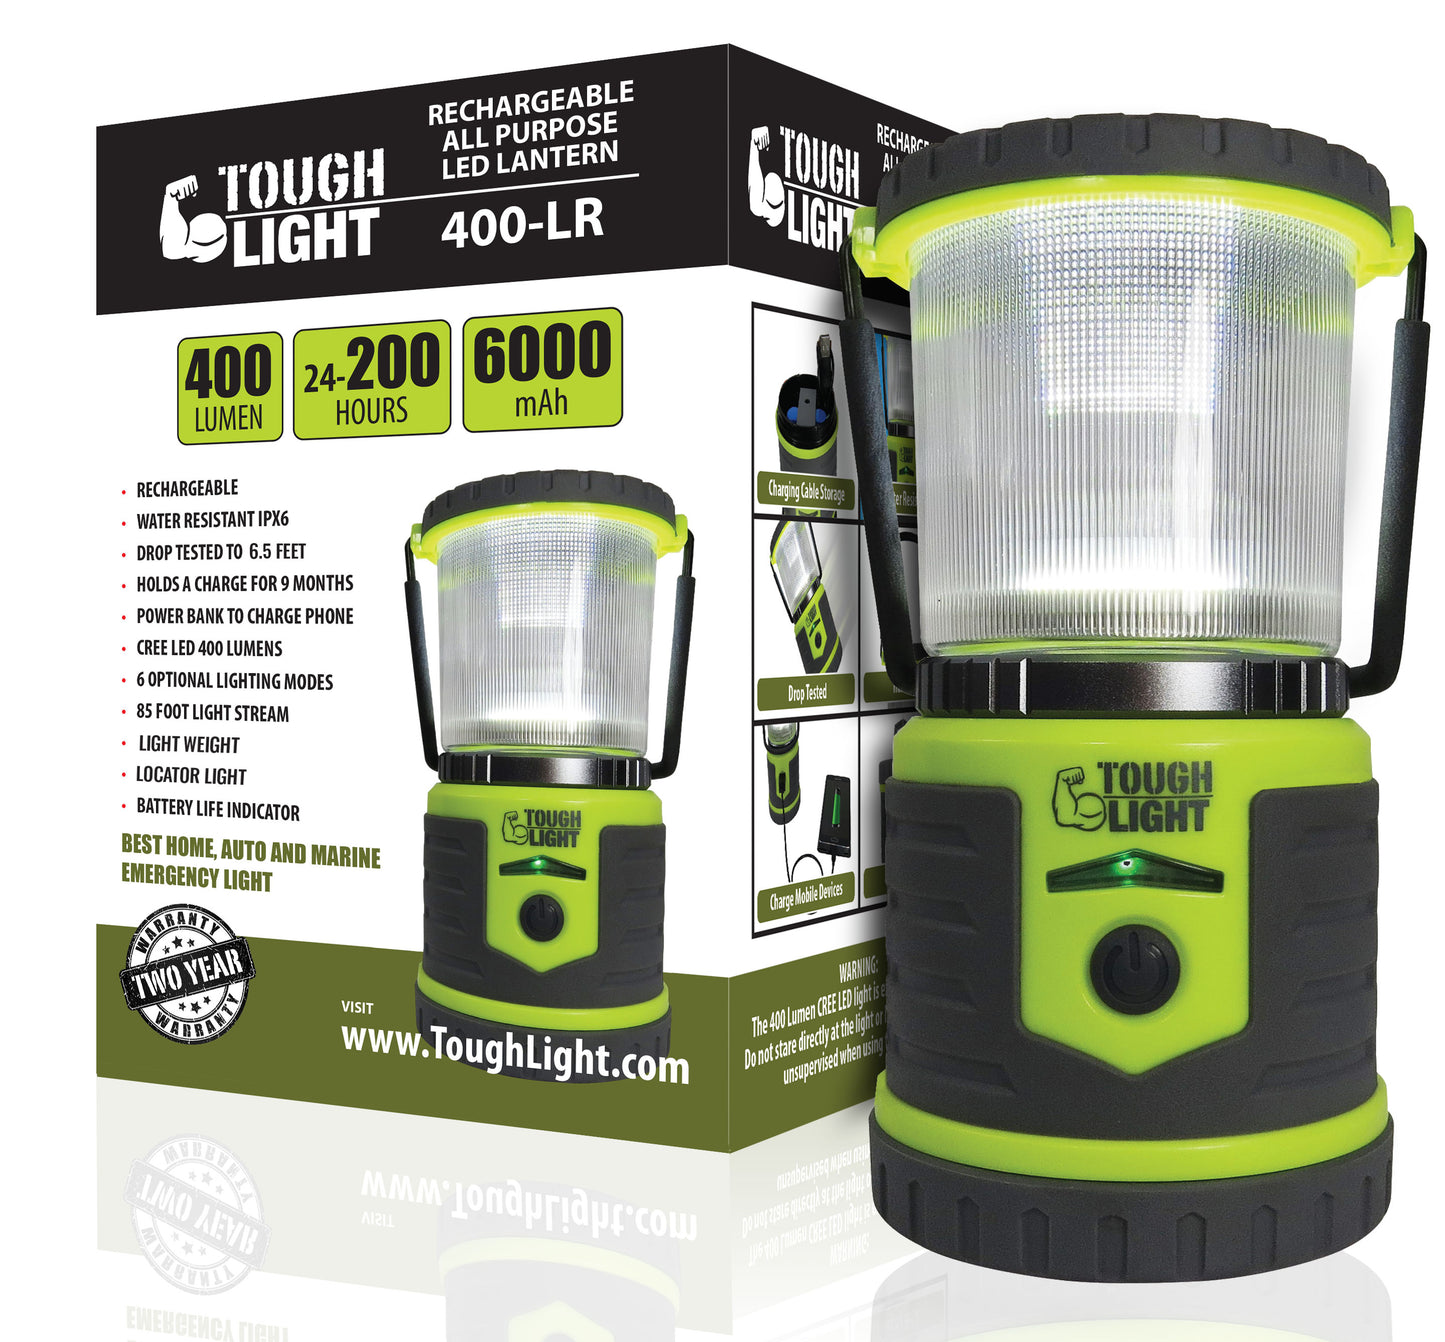 Tough Light 400-LR Rechargeable LED Lantern